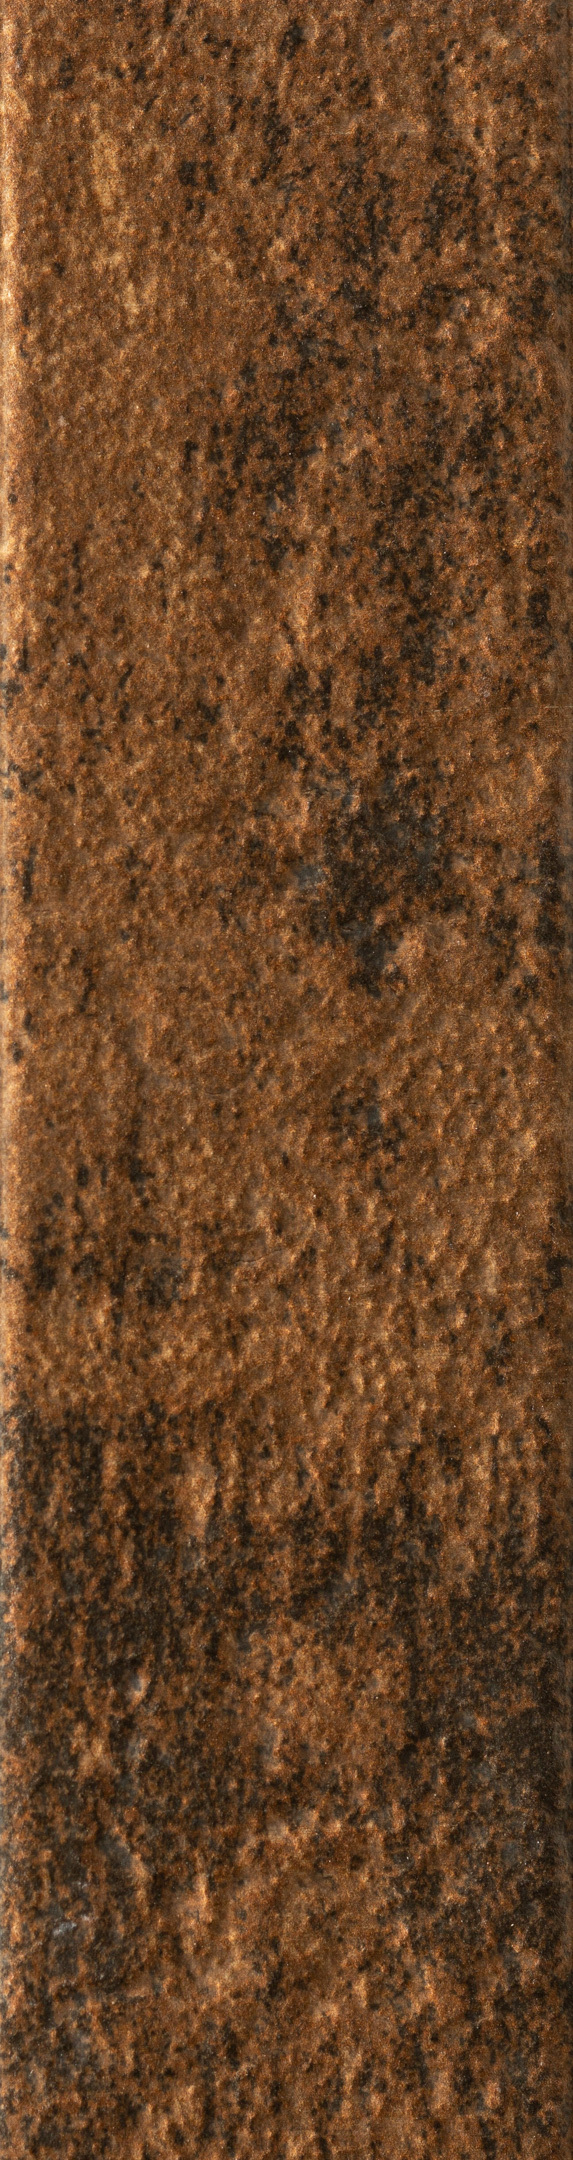 Клинкерная плитка Керамин Теннесси 3Т коричневая 245х65х7 мм (34 шт.=0,54 кв.м) клинкерная плитка керамин мичиган 7 белая 245х65х7 мм 34 шт 0 54 кв м